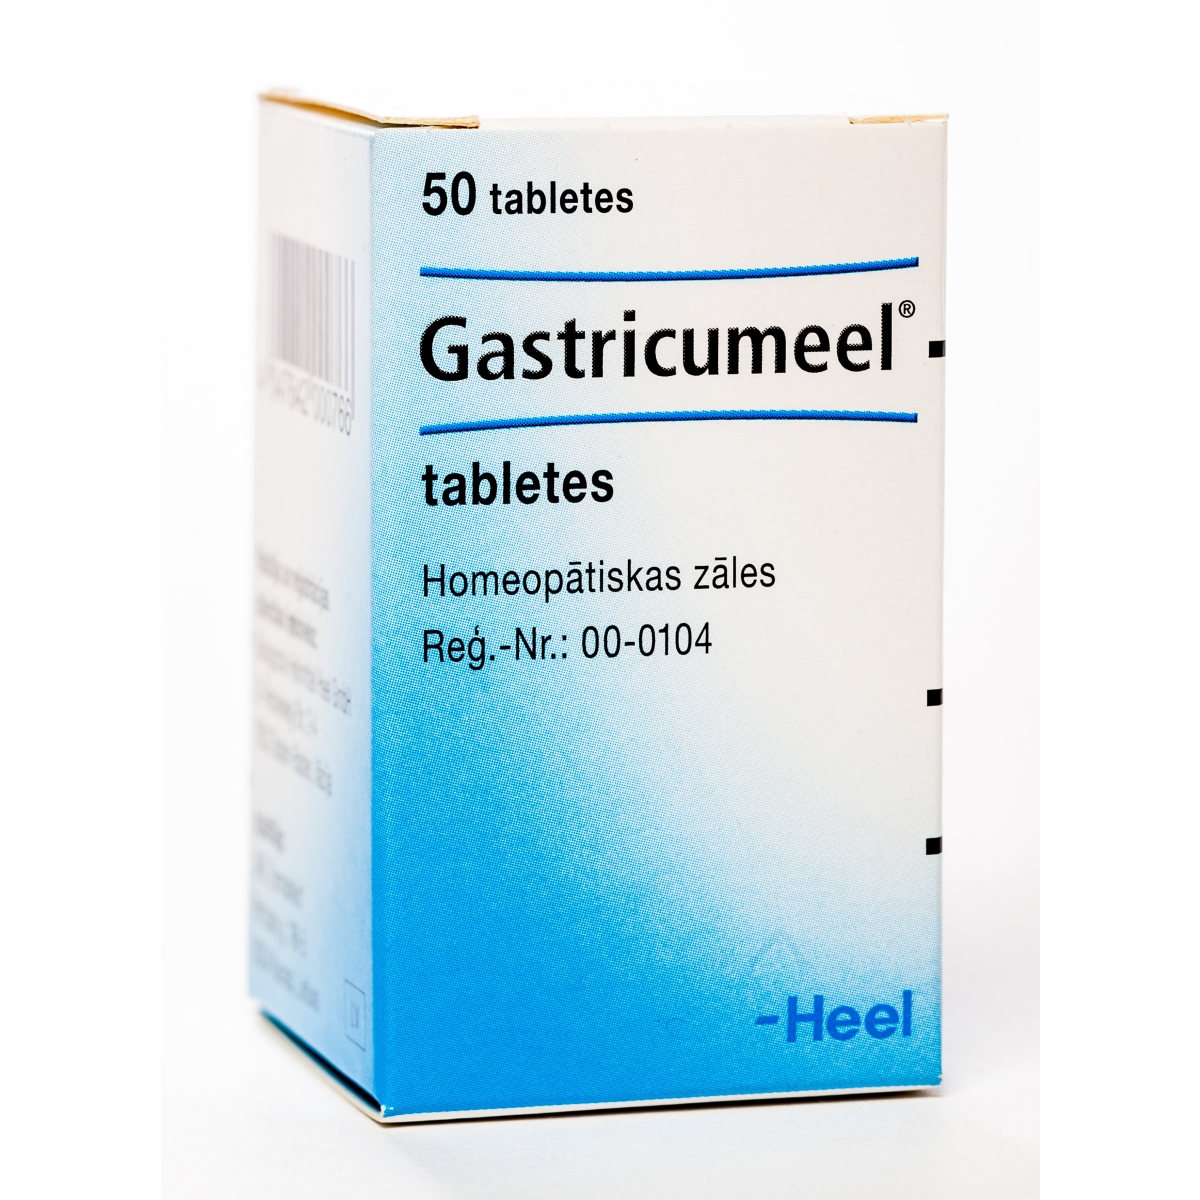 GASTRICUMEEL TABLETES N50